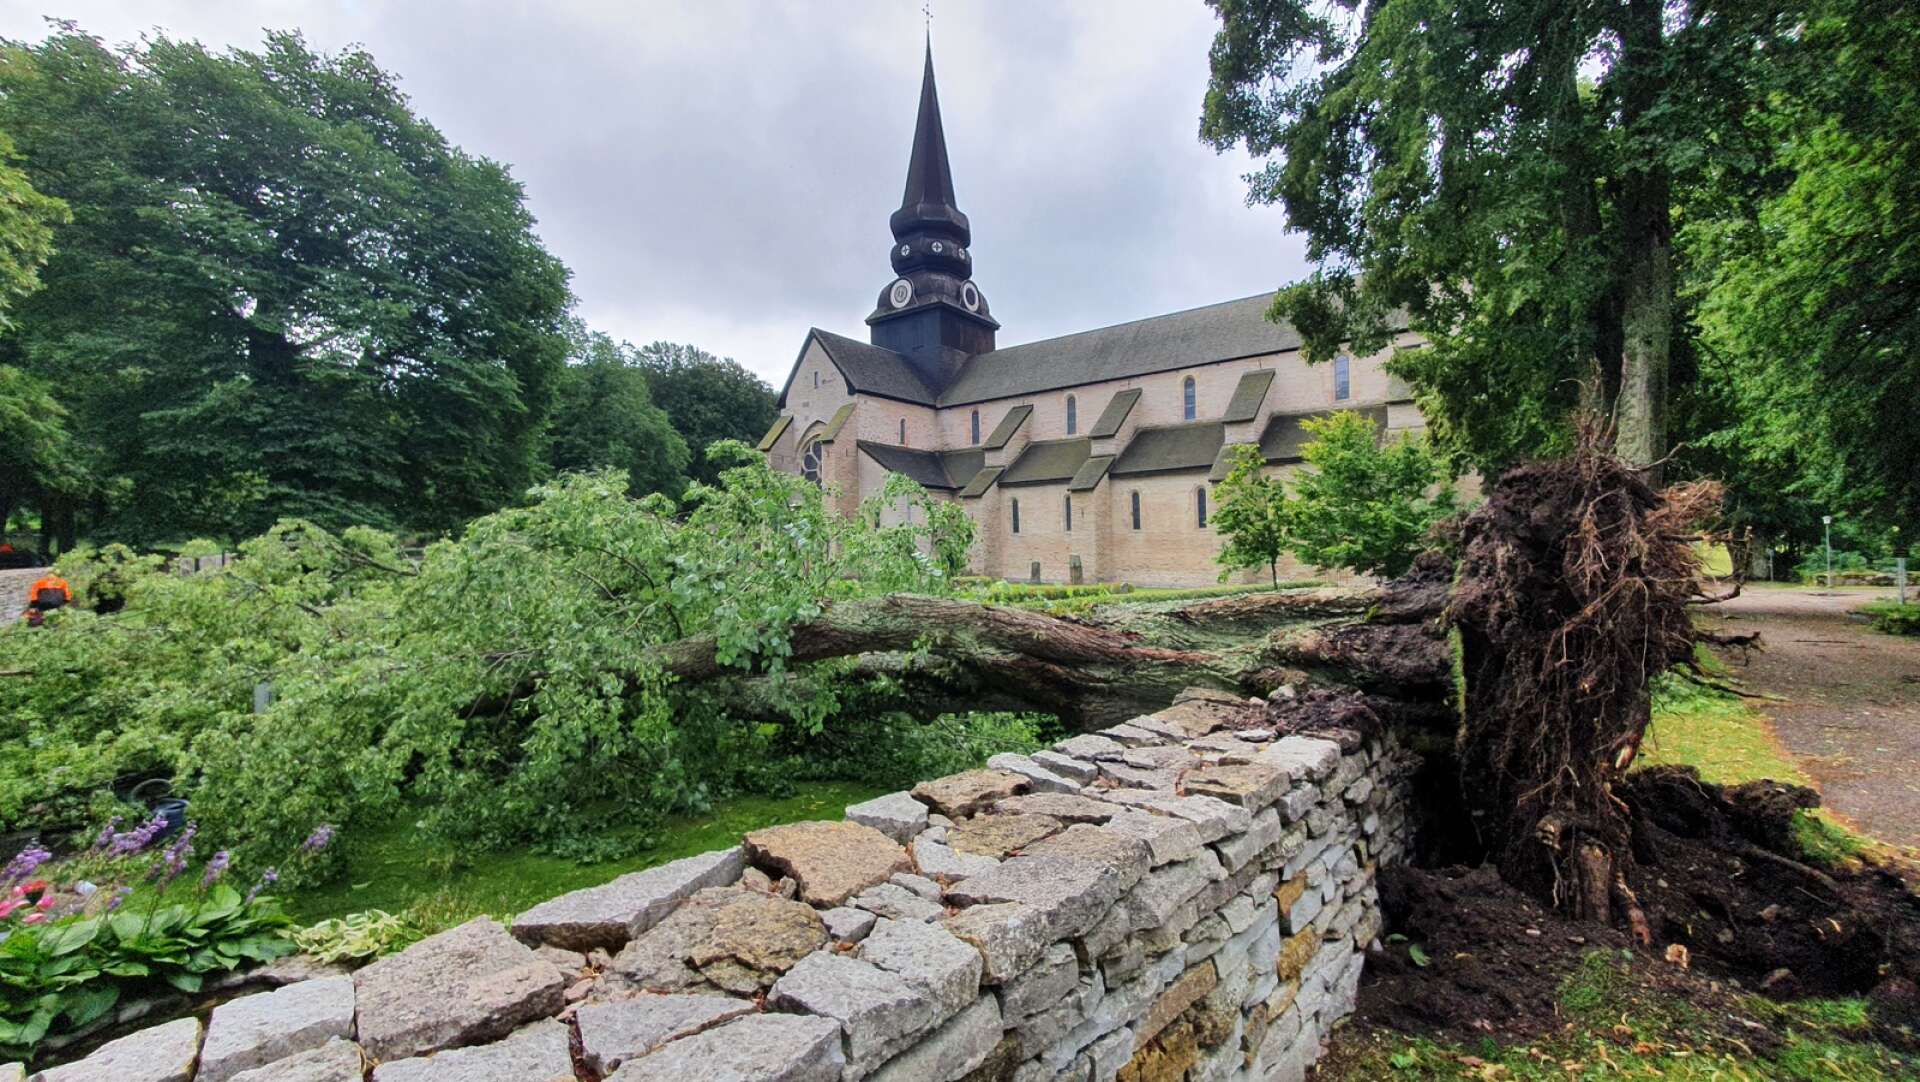 Uppröjningsarbetet efter nedfallna träd i Varnhem väntas ta in i nästa vecka.